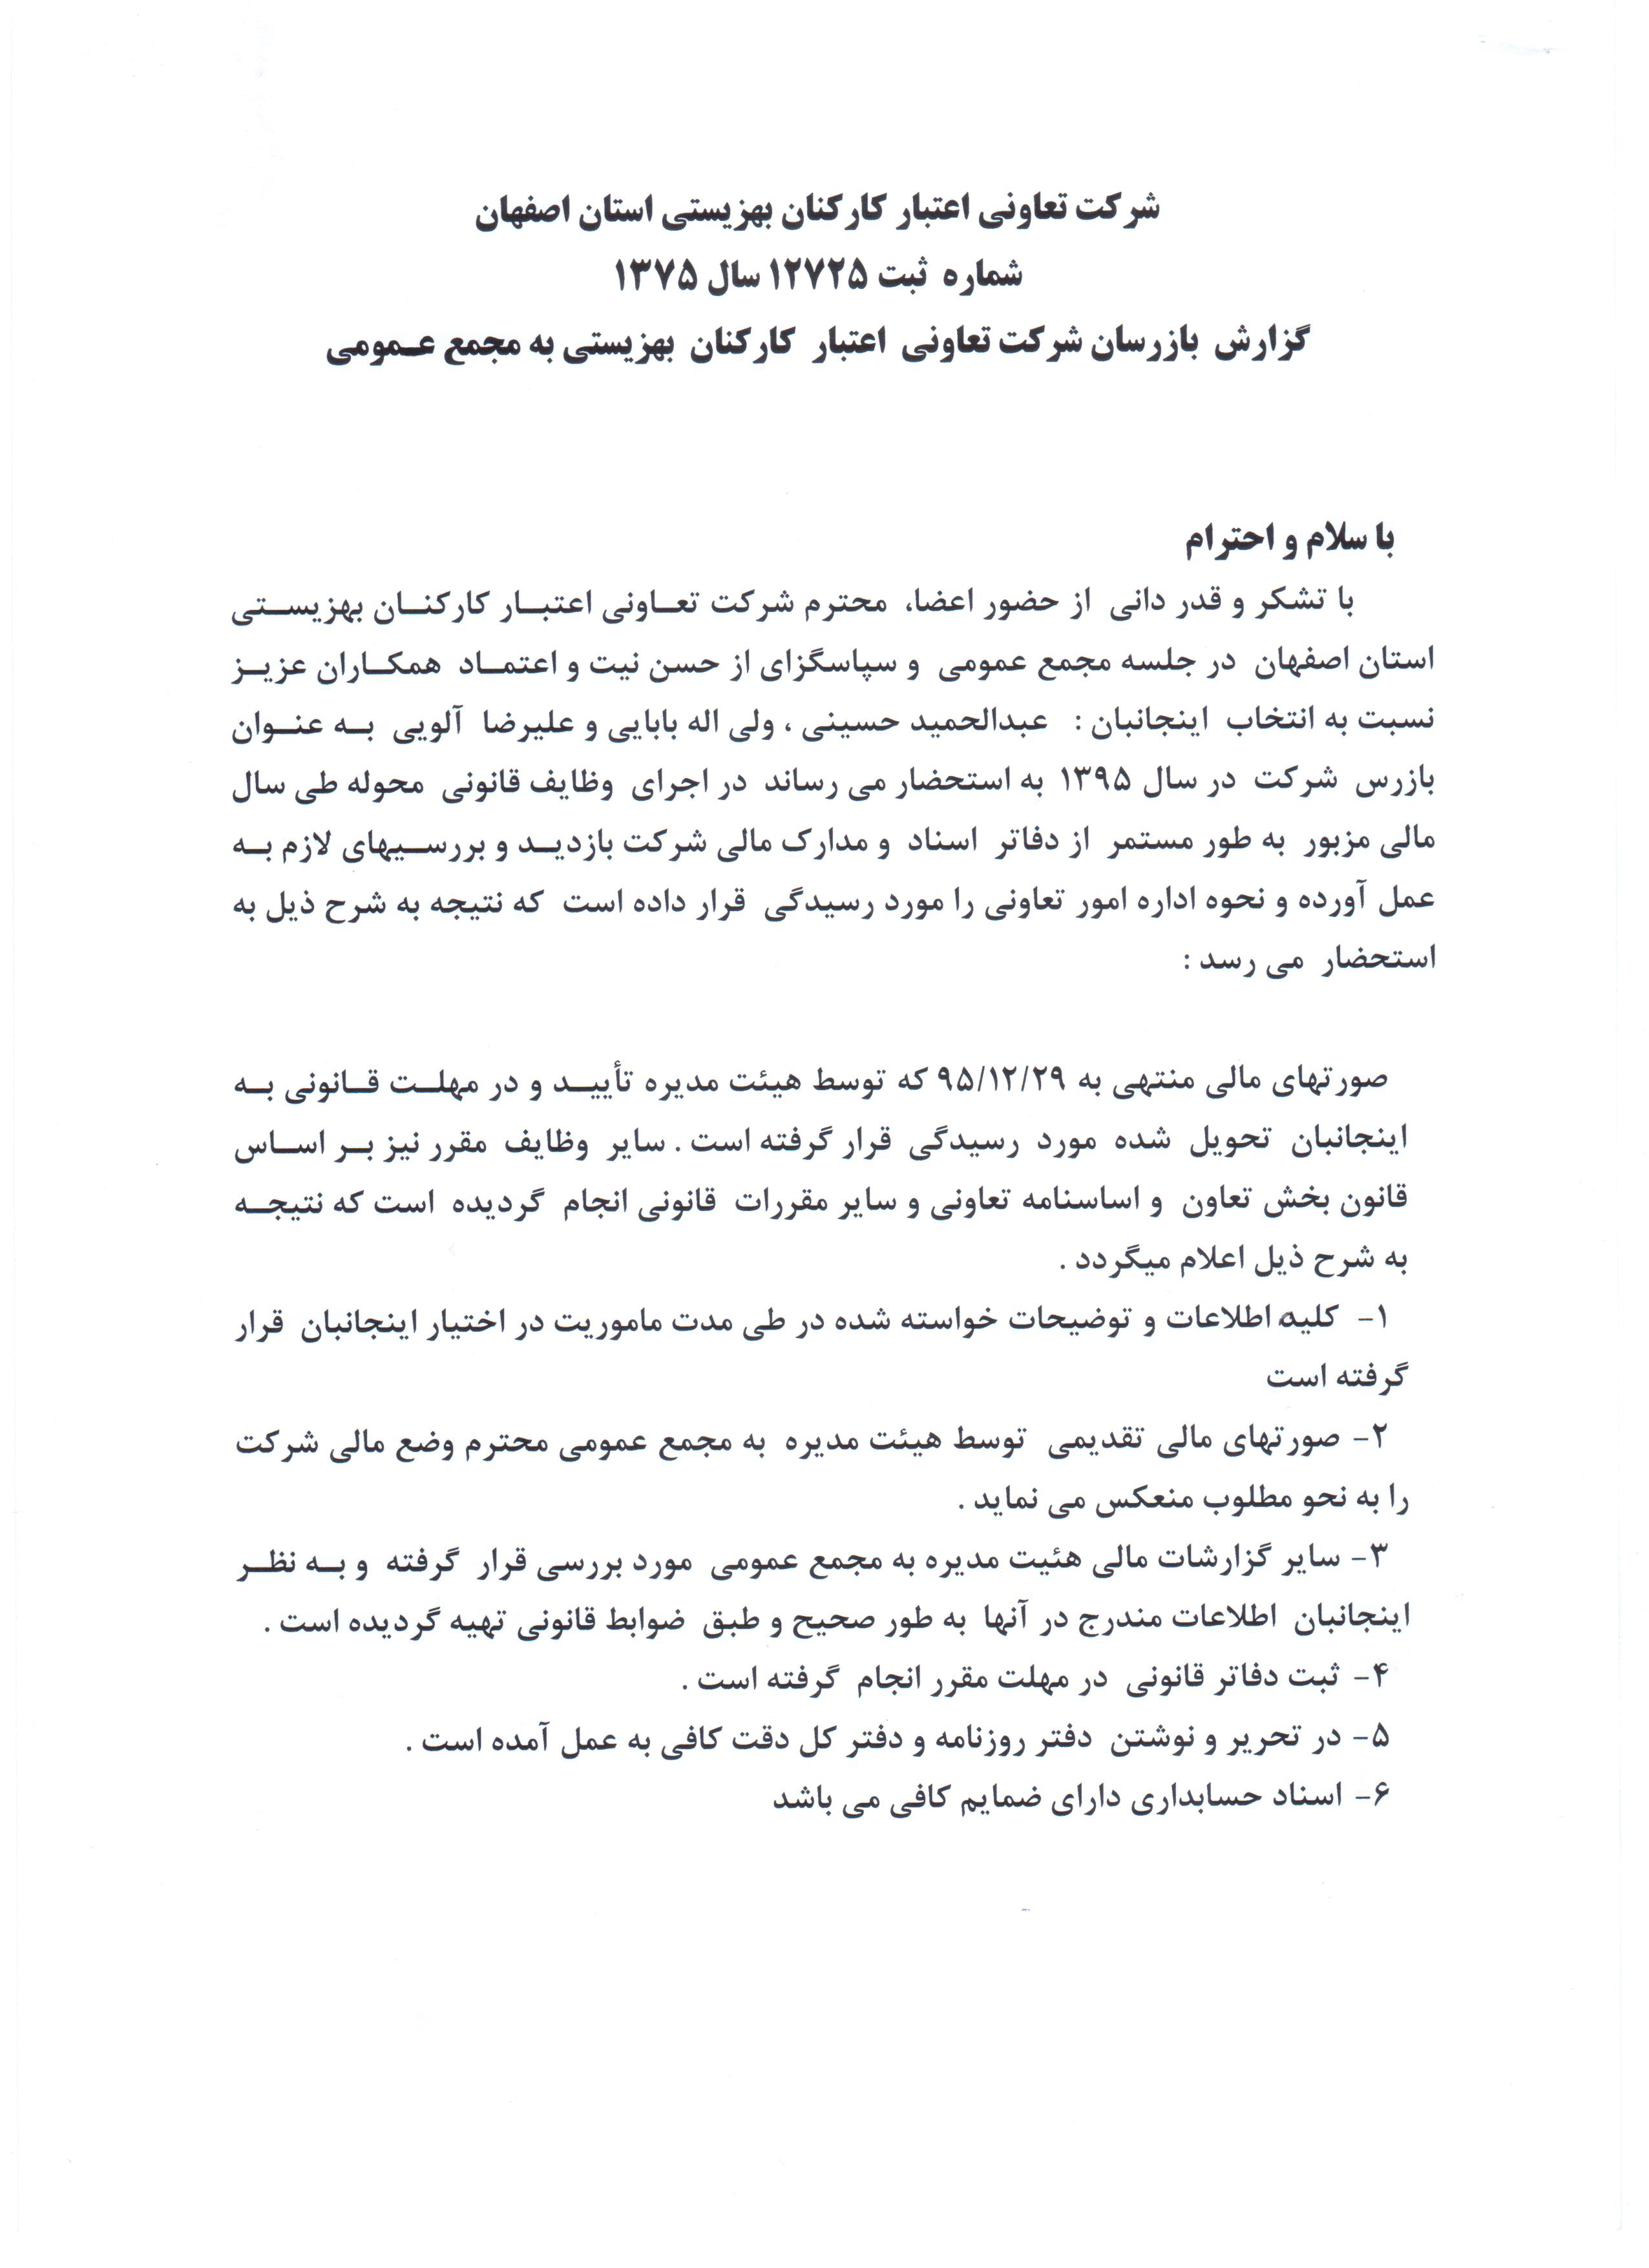 گزارش بازرسان شرکت تعاونی اعتبار کارکنان بهزیستی اصفهان